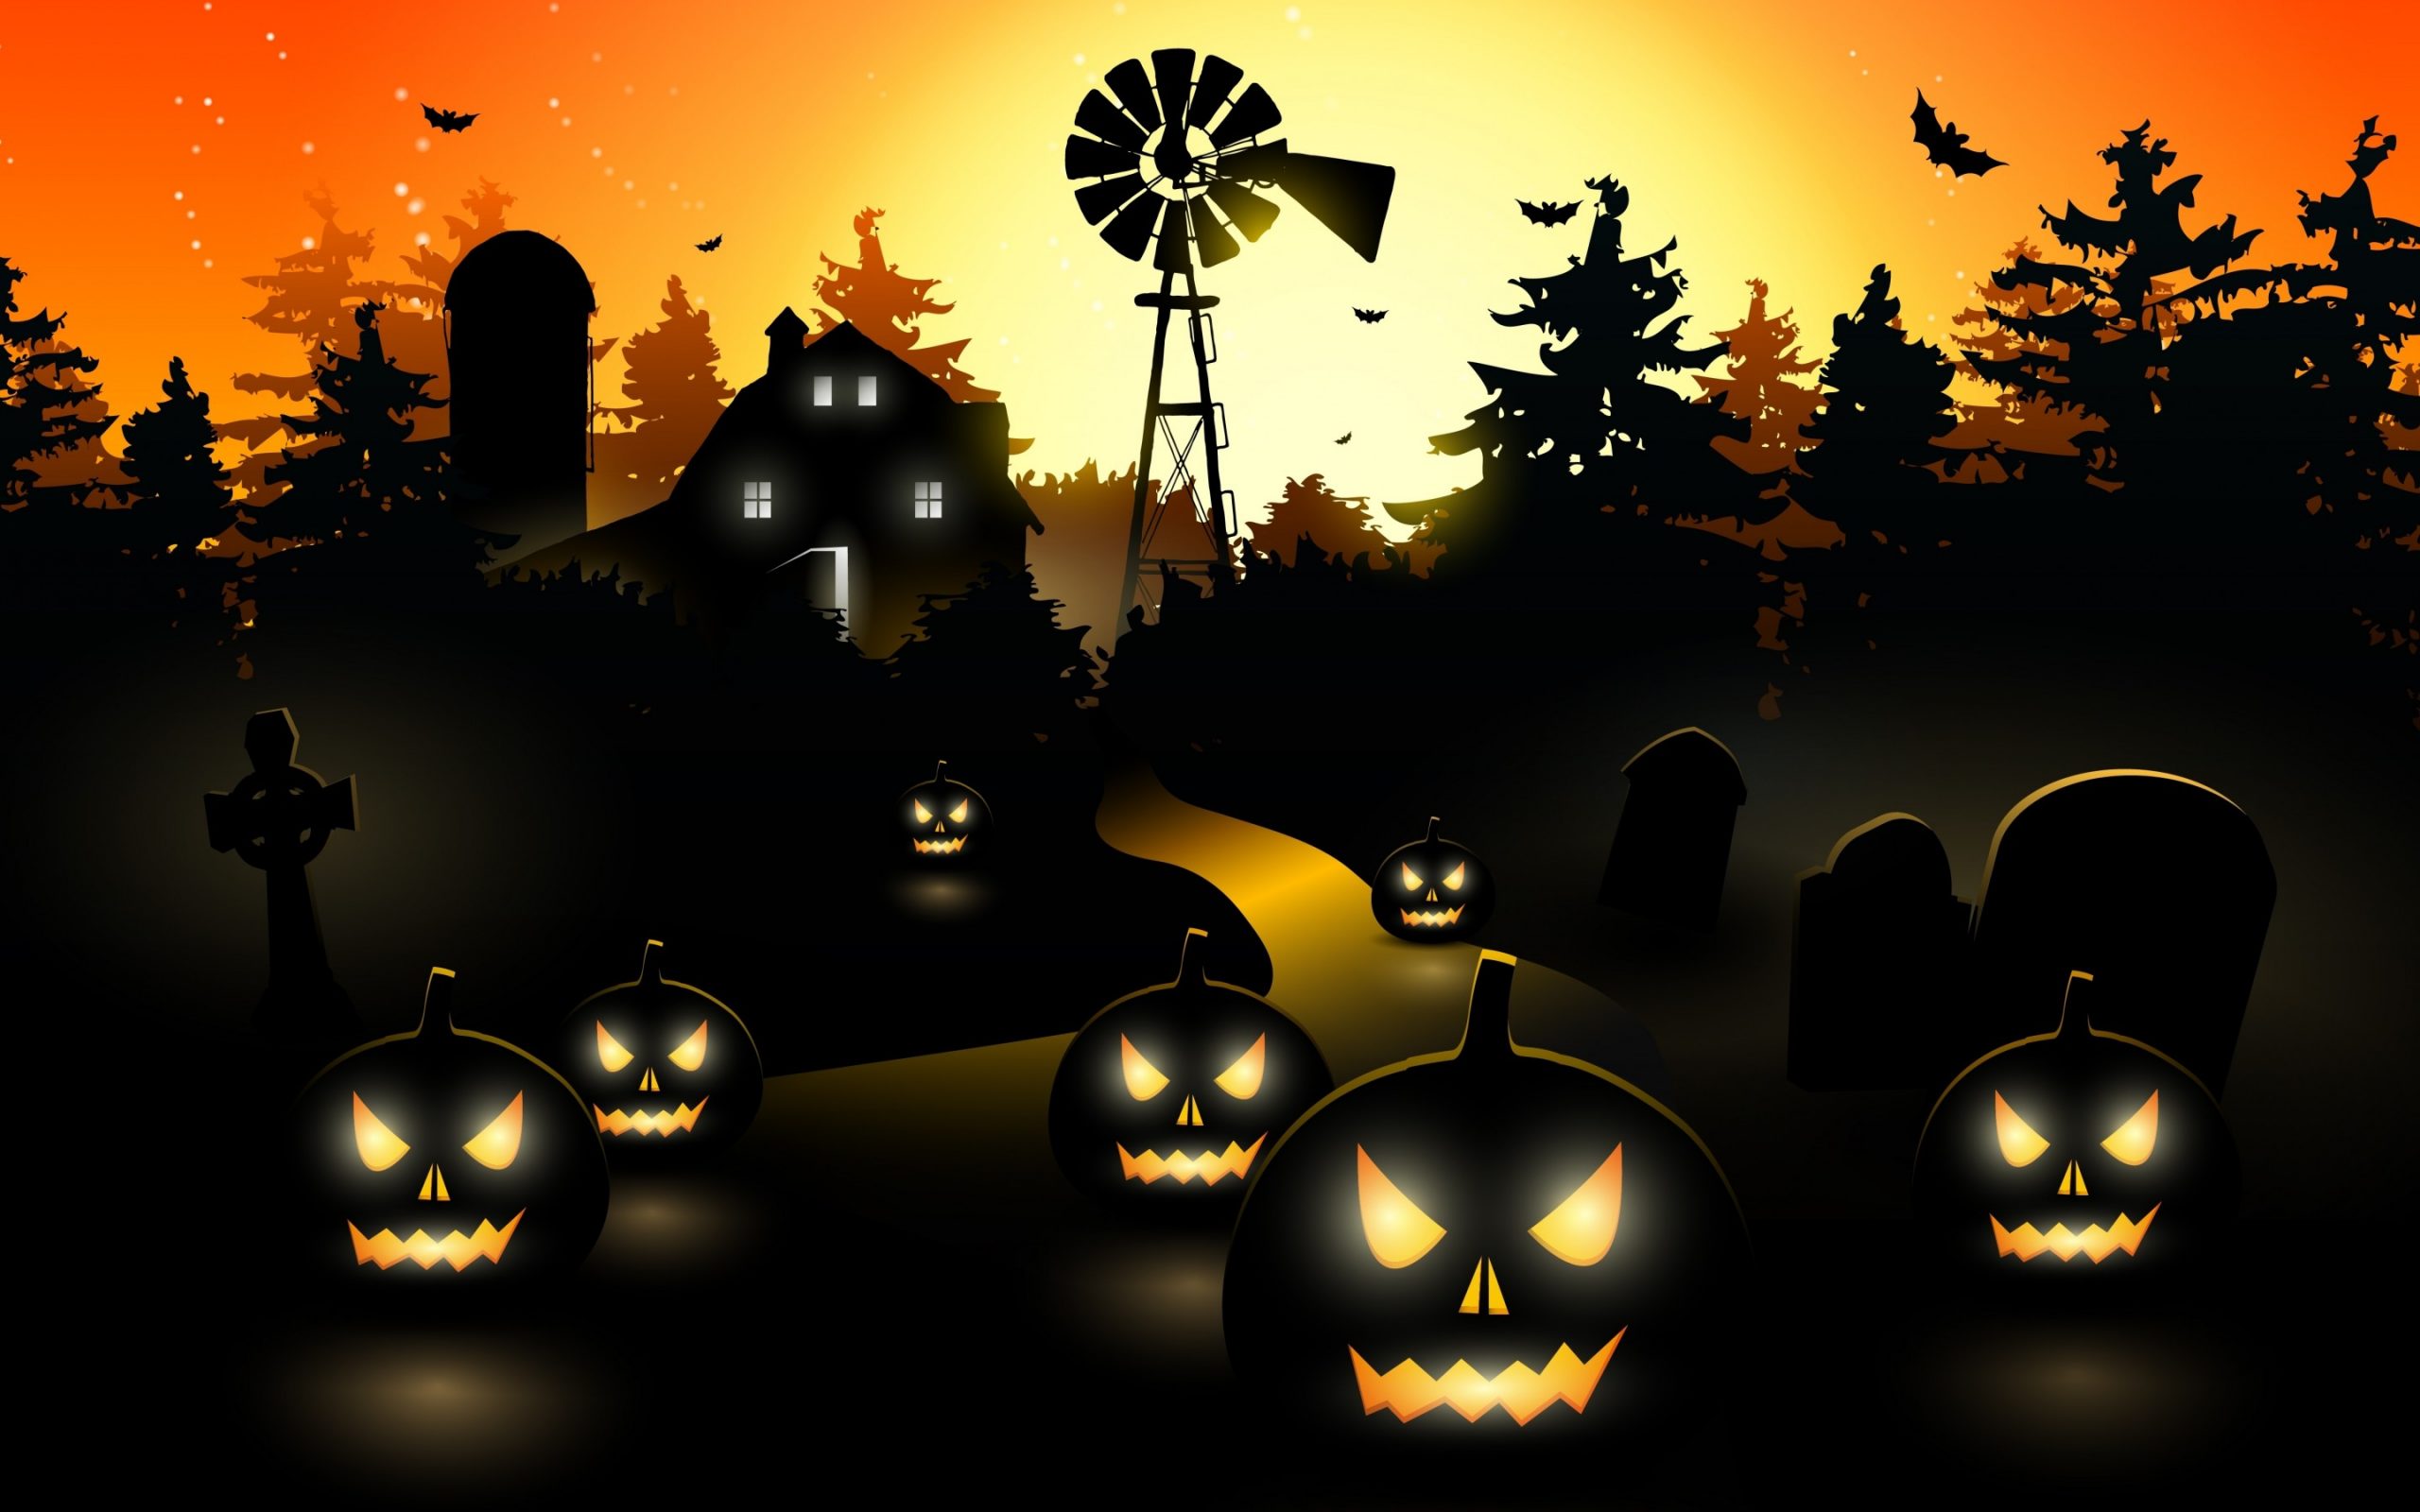 Free Download Halloween Desktop Backgrounds Pixelstalknet